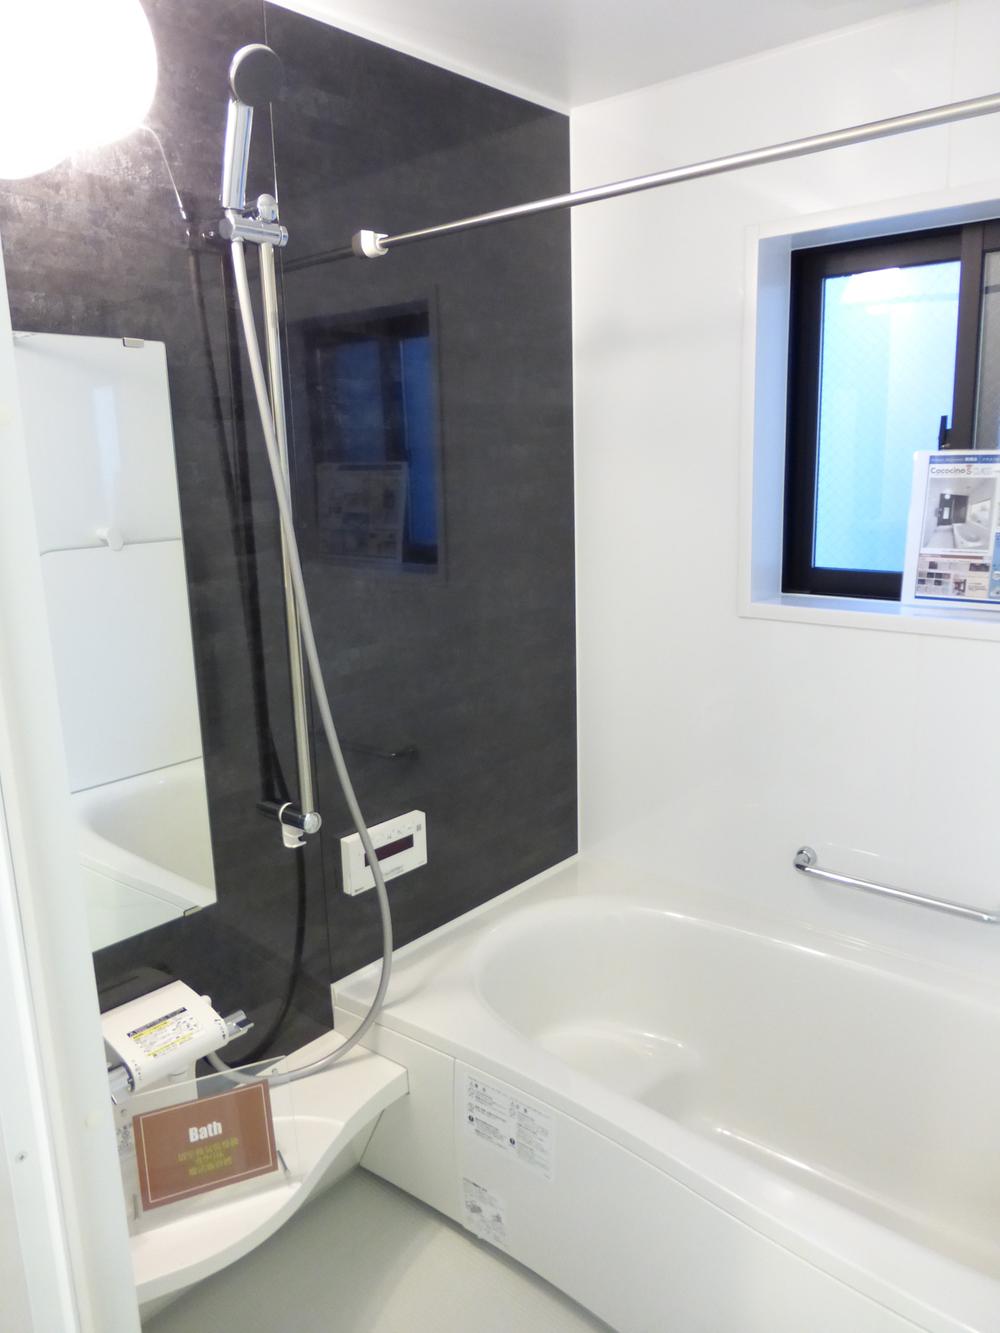 Bathroom. Indoor (December 15, 2013) Shooting Carefree bathing in one tsubo bus